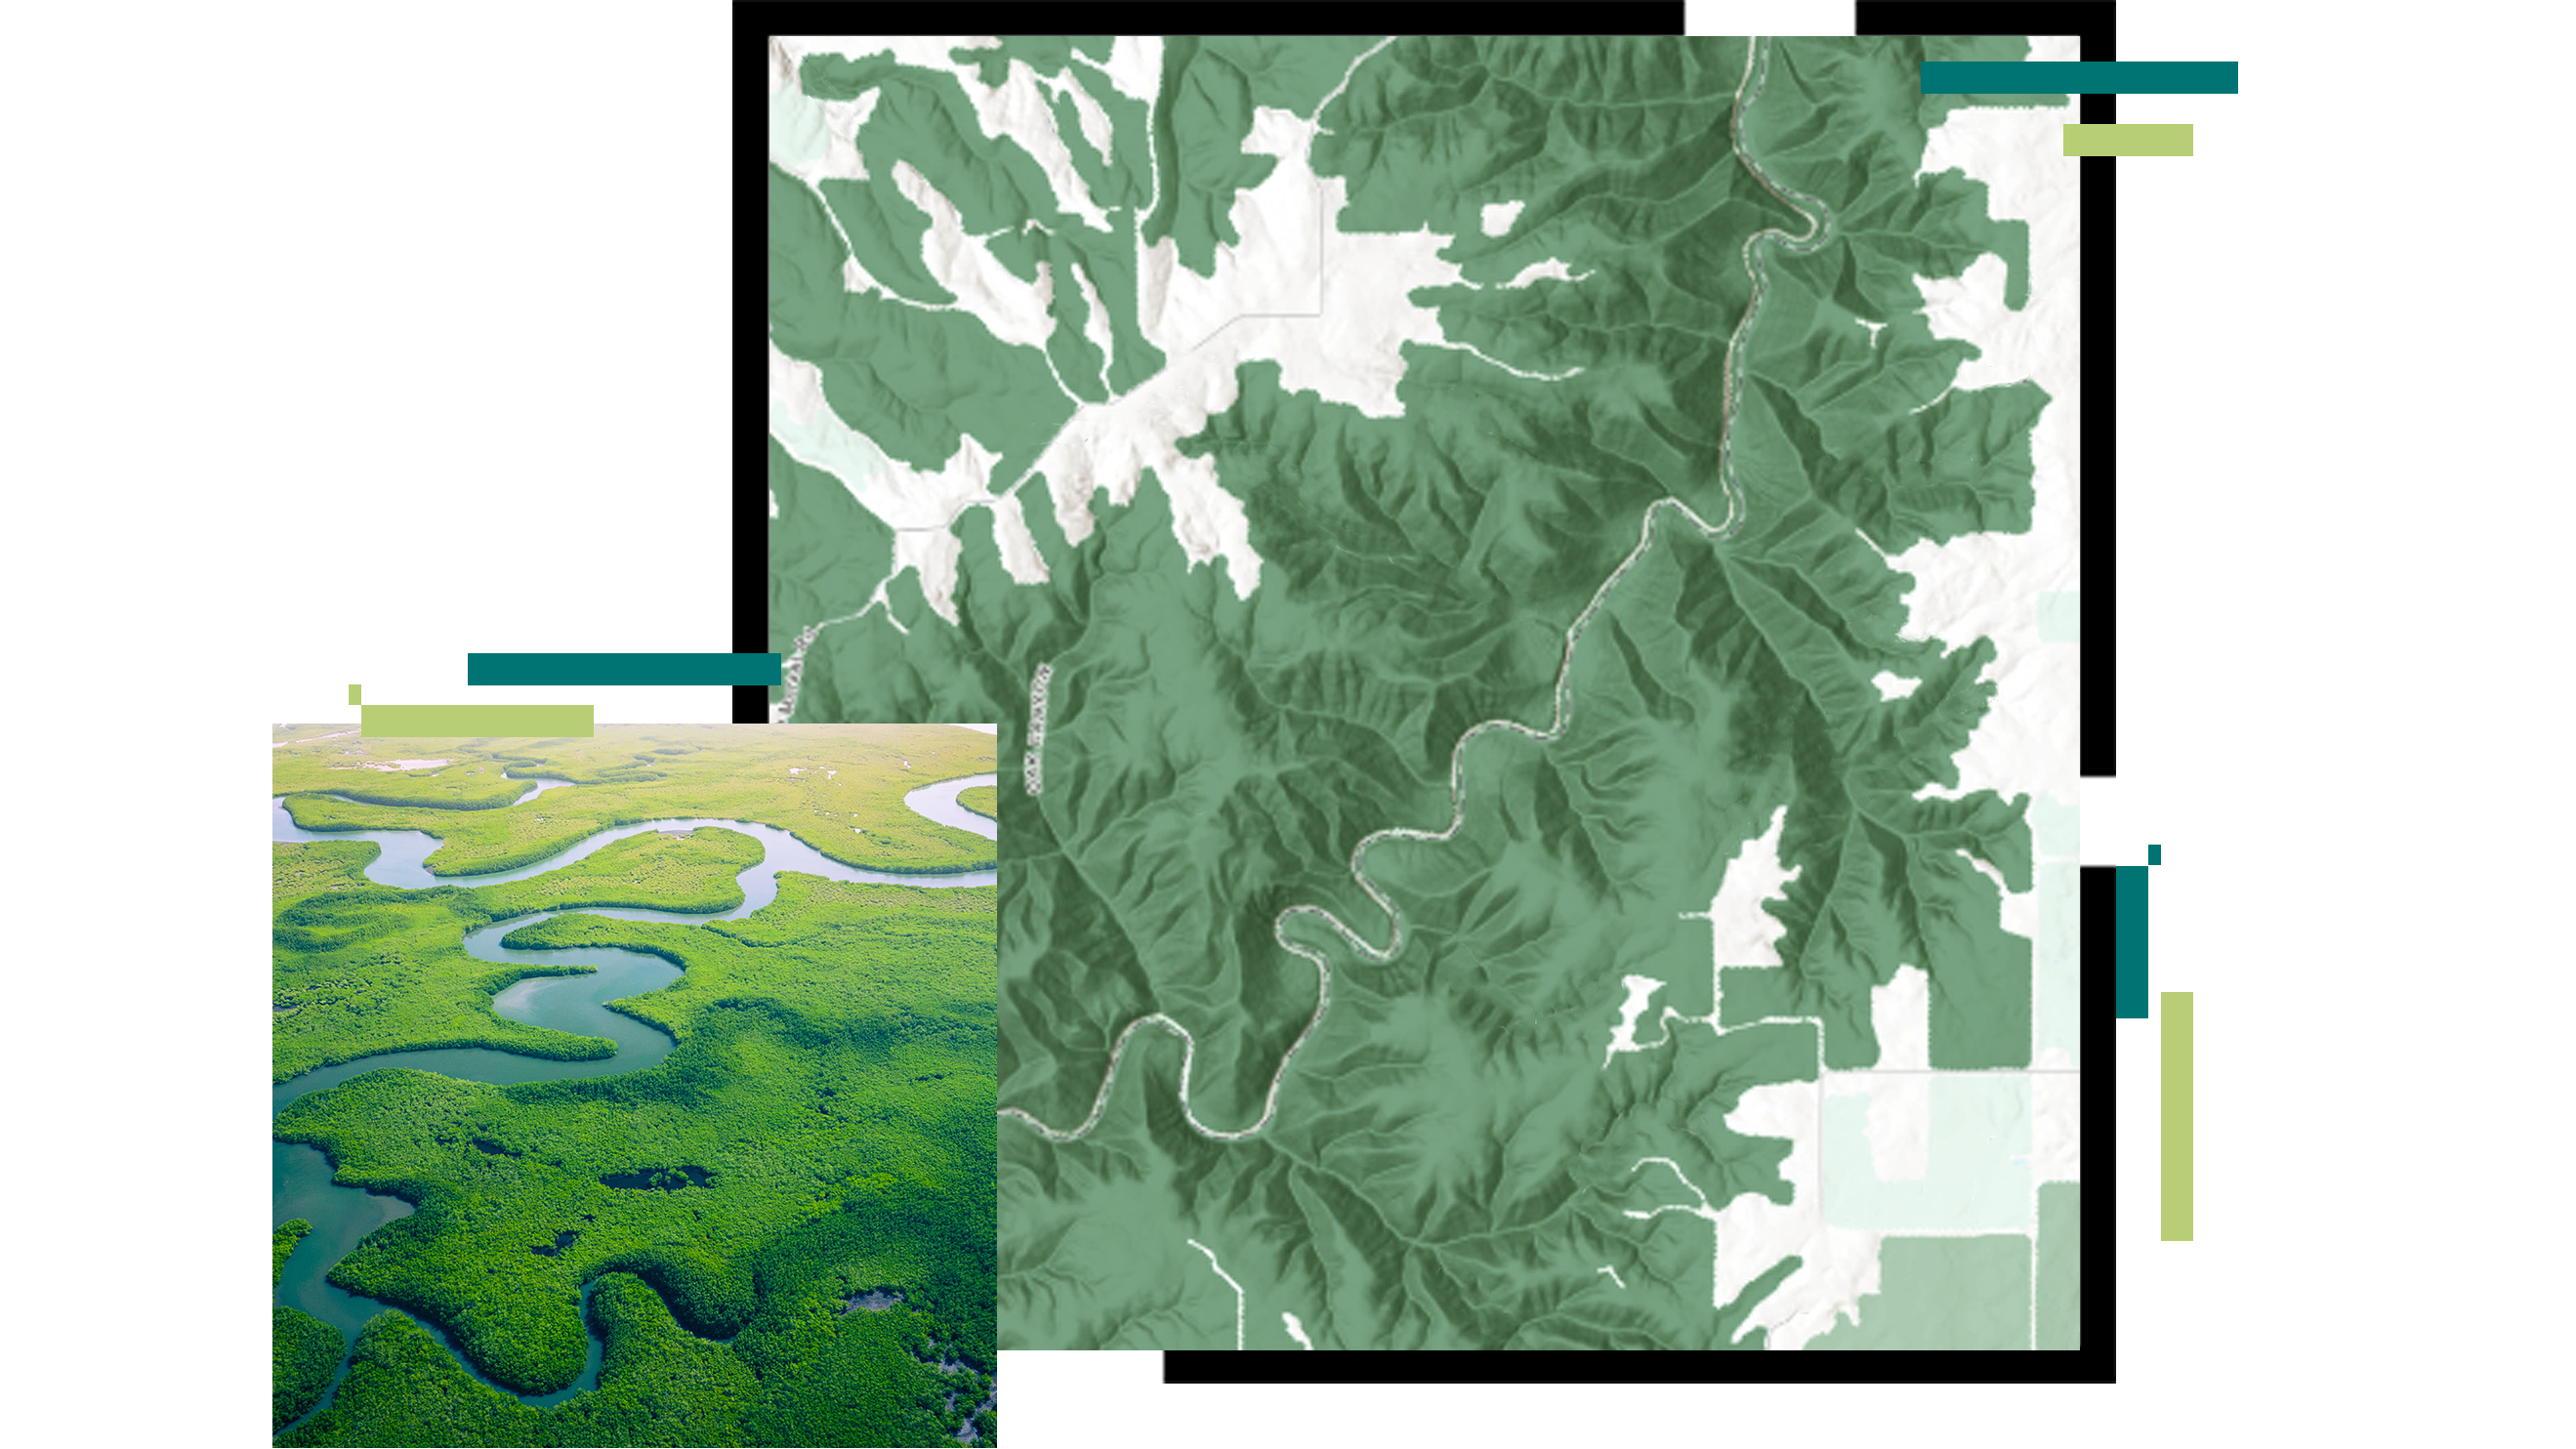 Um mapa em relevo de um rio sinuoso sobreposto a uma imagem aérea de uma floresta de mangue verde brilhante com um rio azul fluindo através dele